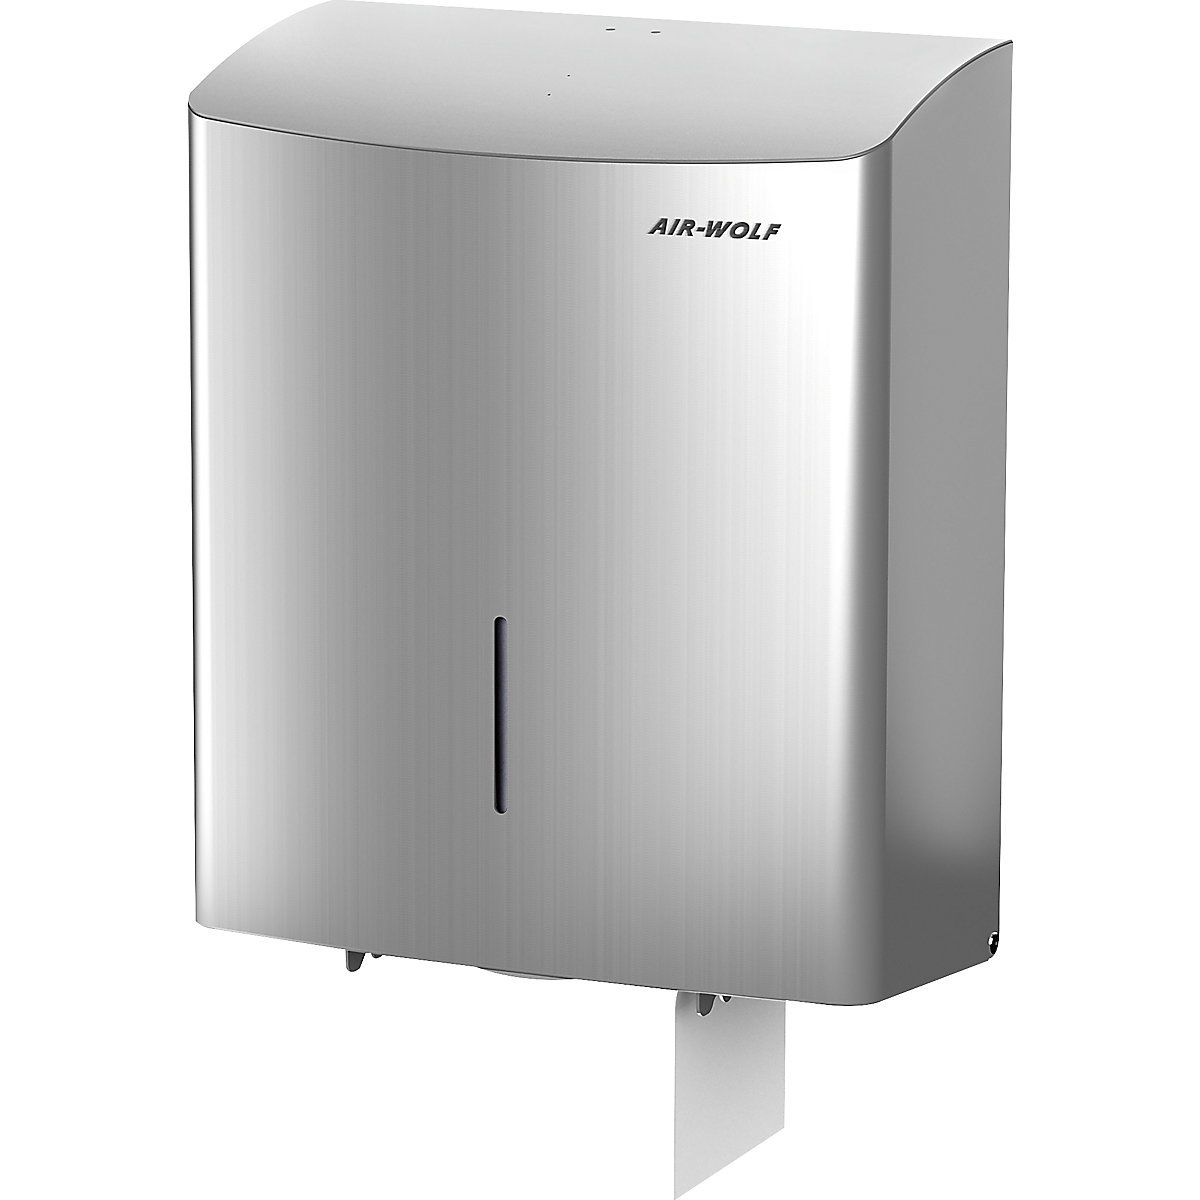 AIR-WOLF Duplex-Toilettenpapierspender, für 1 Großrolle oder 3 Haushaltsrollen, Edelstahl gebürstet